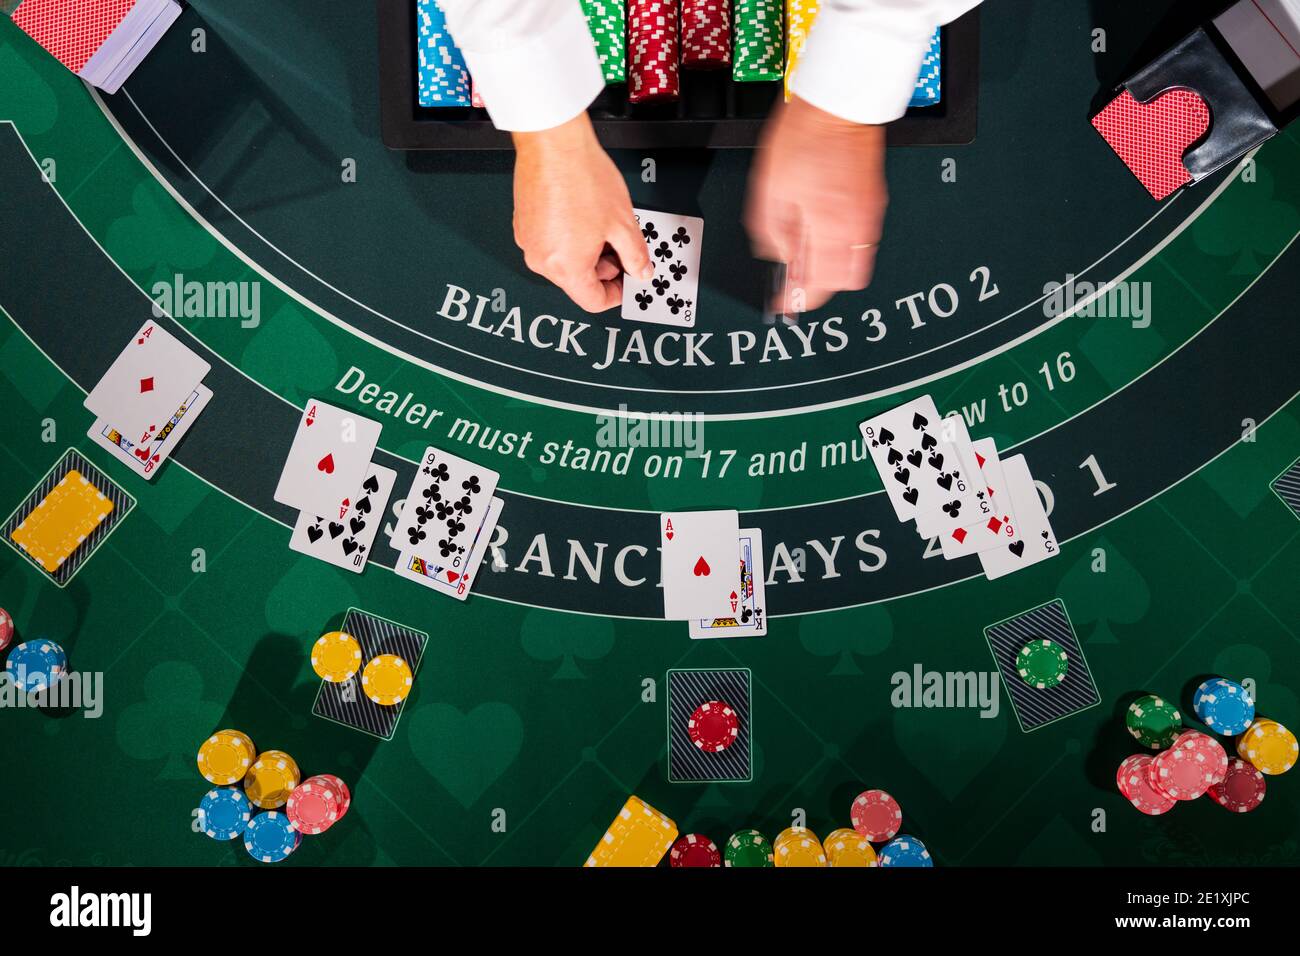 Von oben Blick auf einen Casino Black Jack Tisch Stockfotografie - Alamy